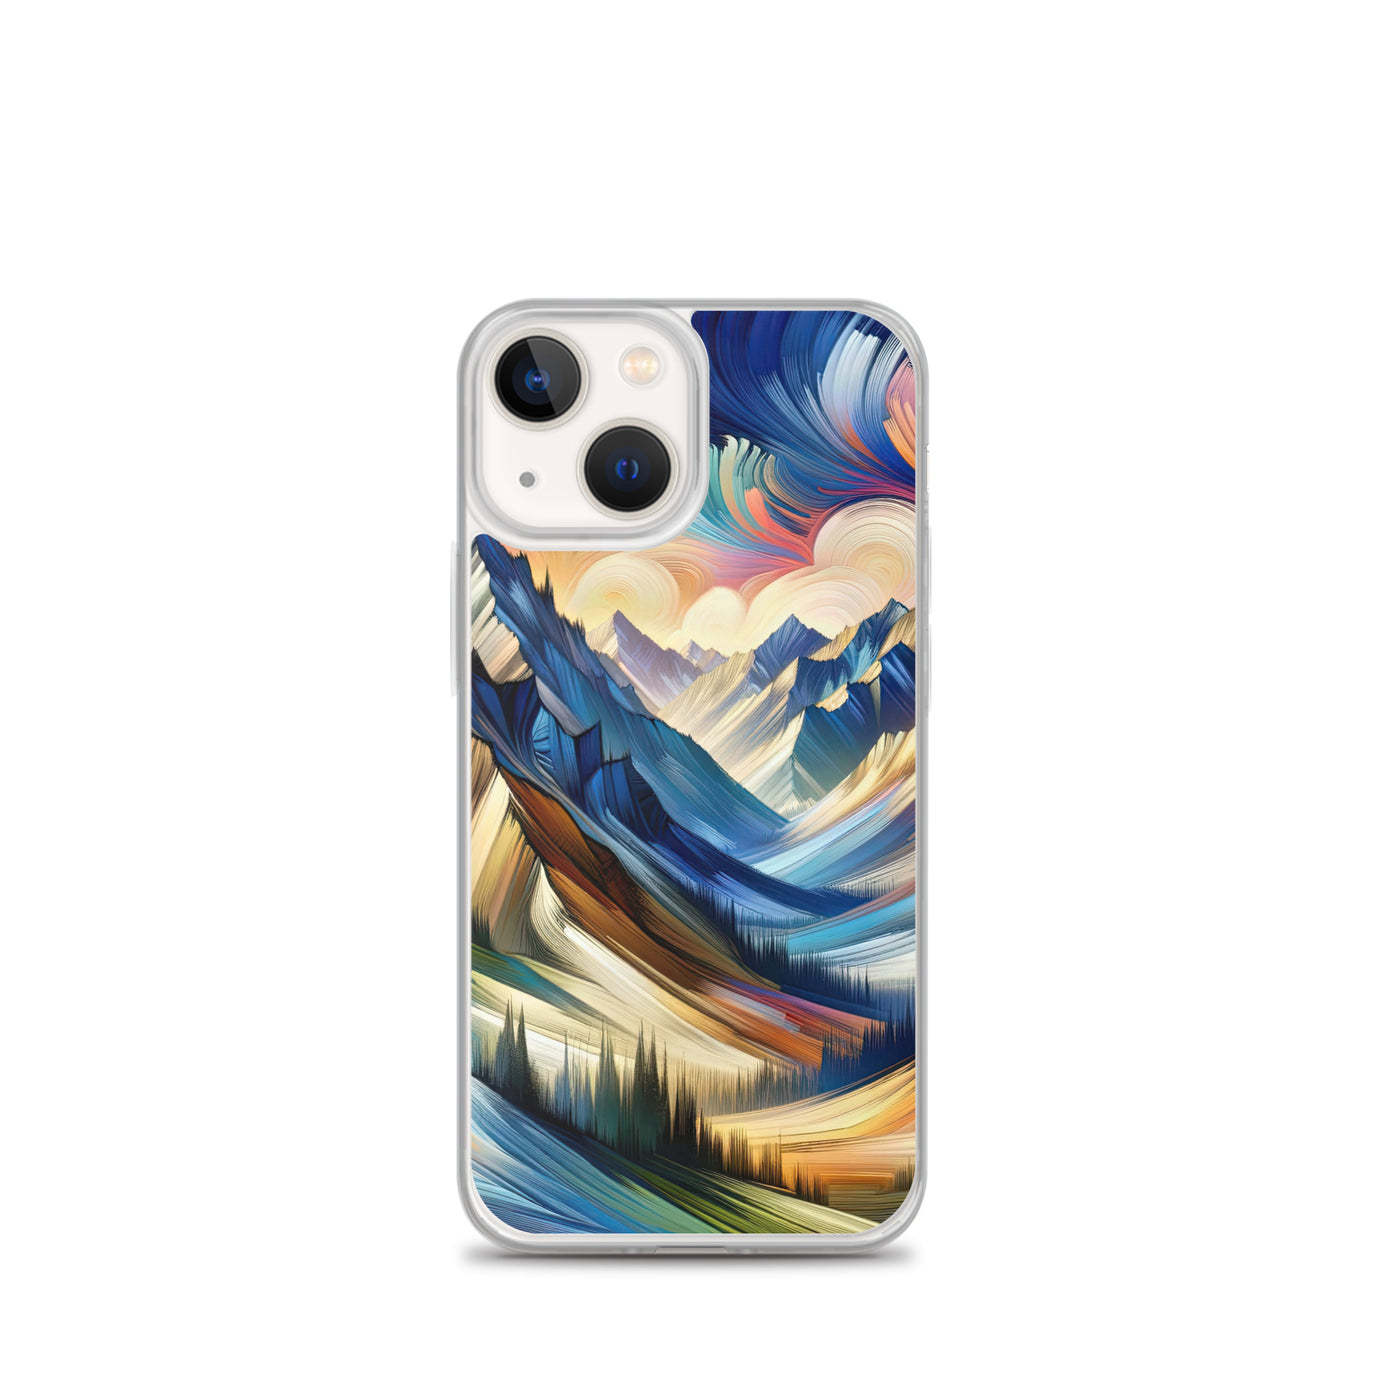 Alpen in abstrakter Expressionismus-Manier, wilde Pinselstriche - iPhone Schutzhülle (durchsichtig) berge xxx yyy zzz iPhone 13 mini